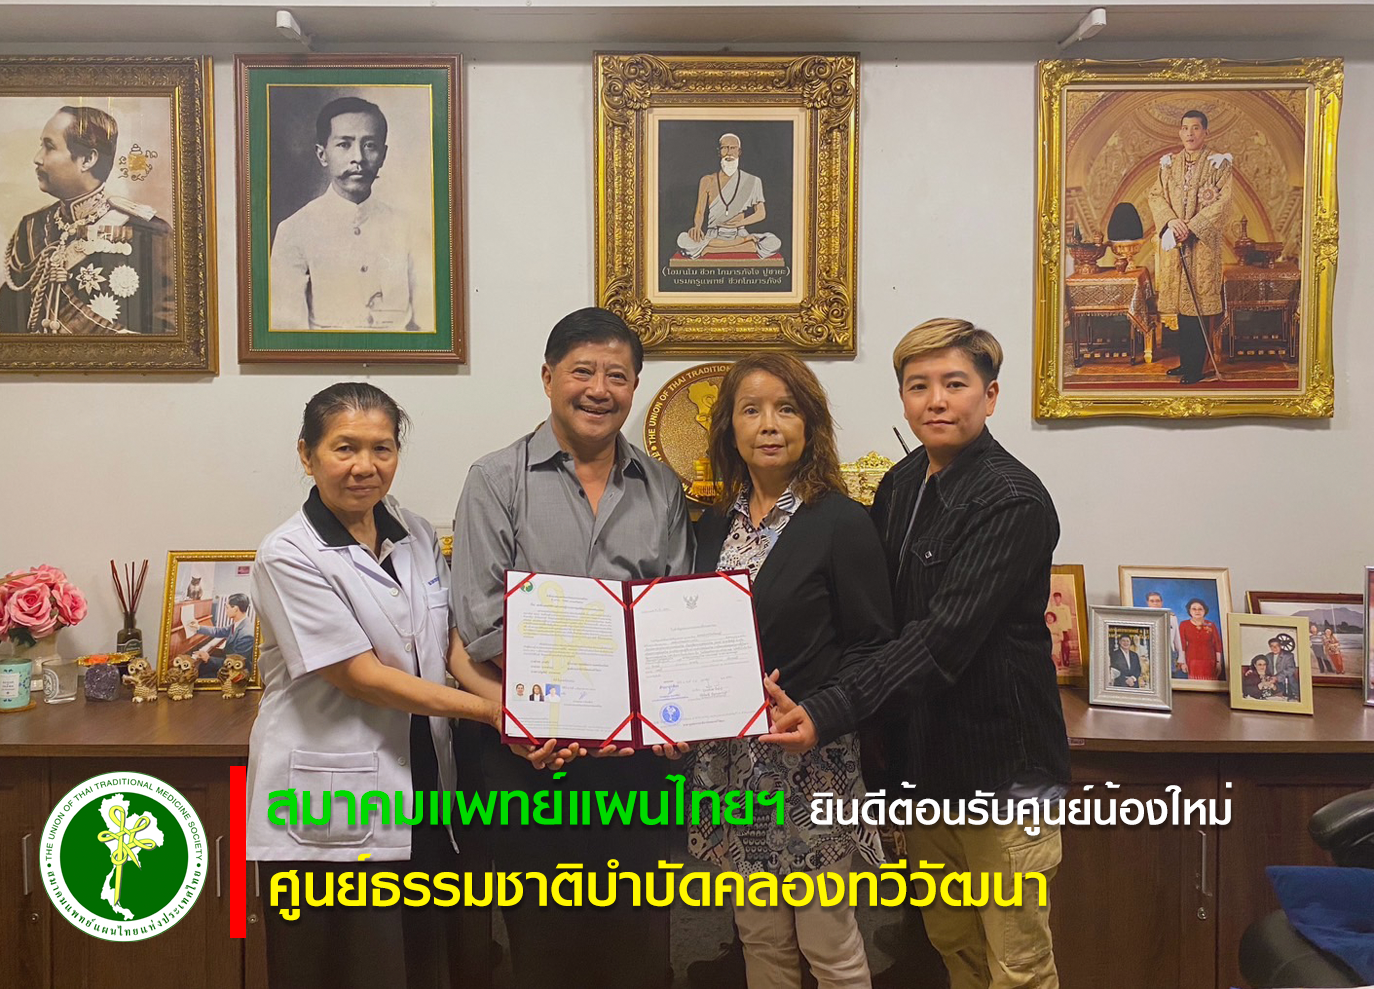 ยินดีต้อนรับศูนย์พัฒนาการแพทย์แผนไทย ศูนย์ธรรมชาติบำบัดคลองทวีวัฒนา